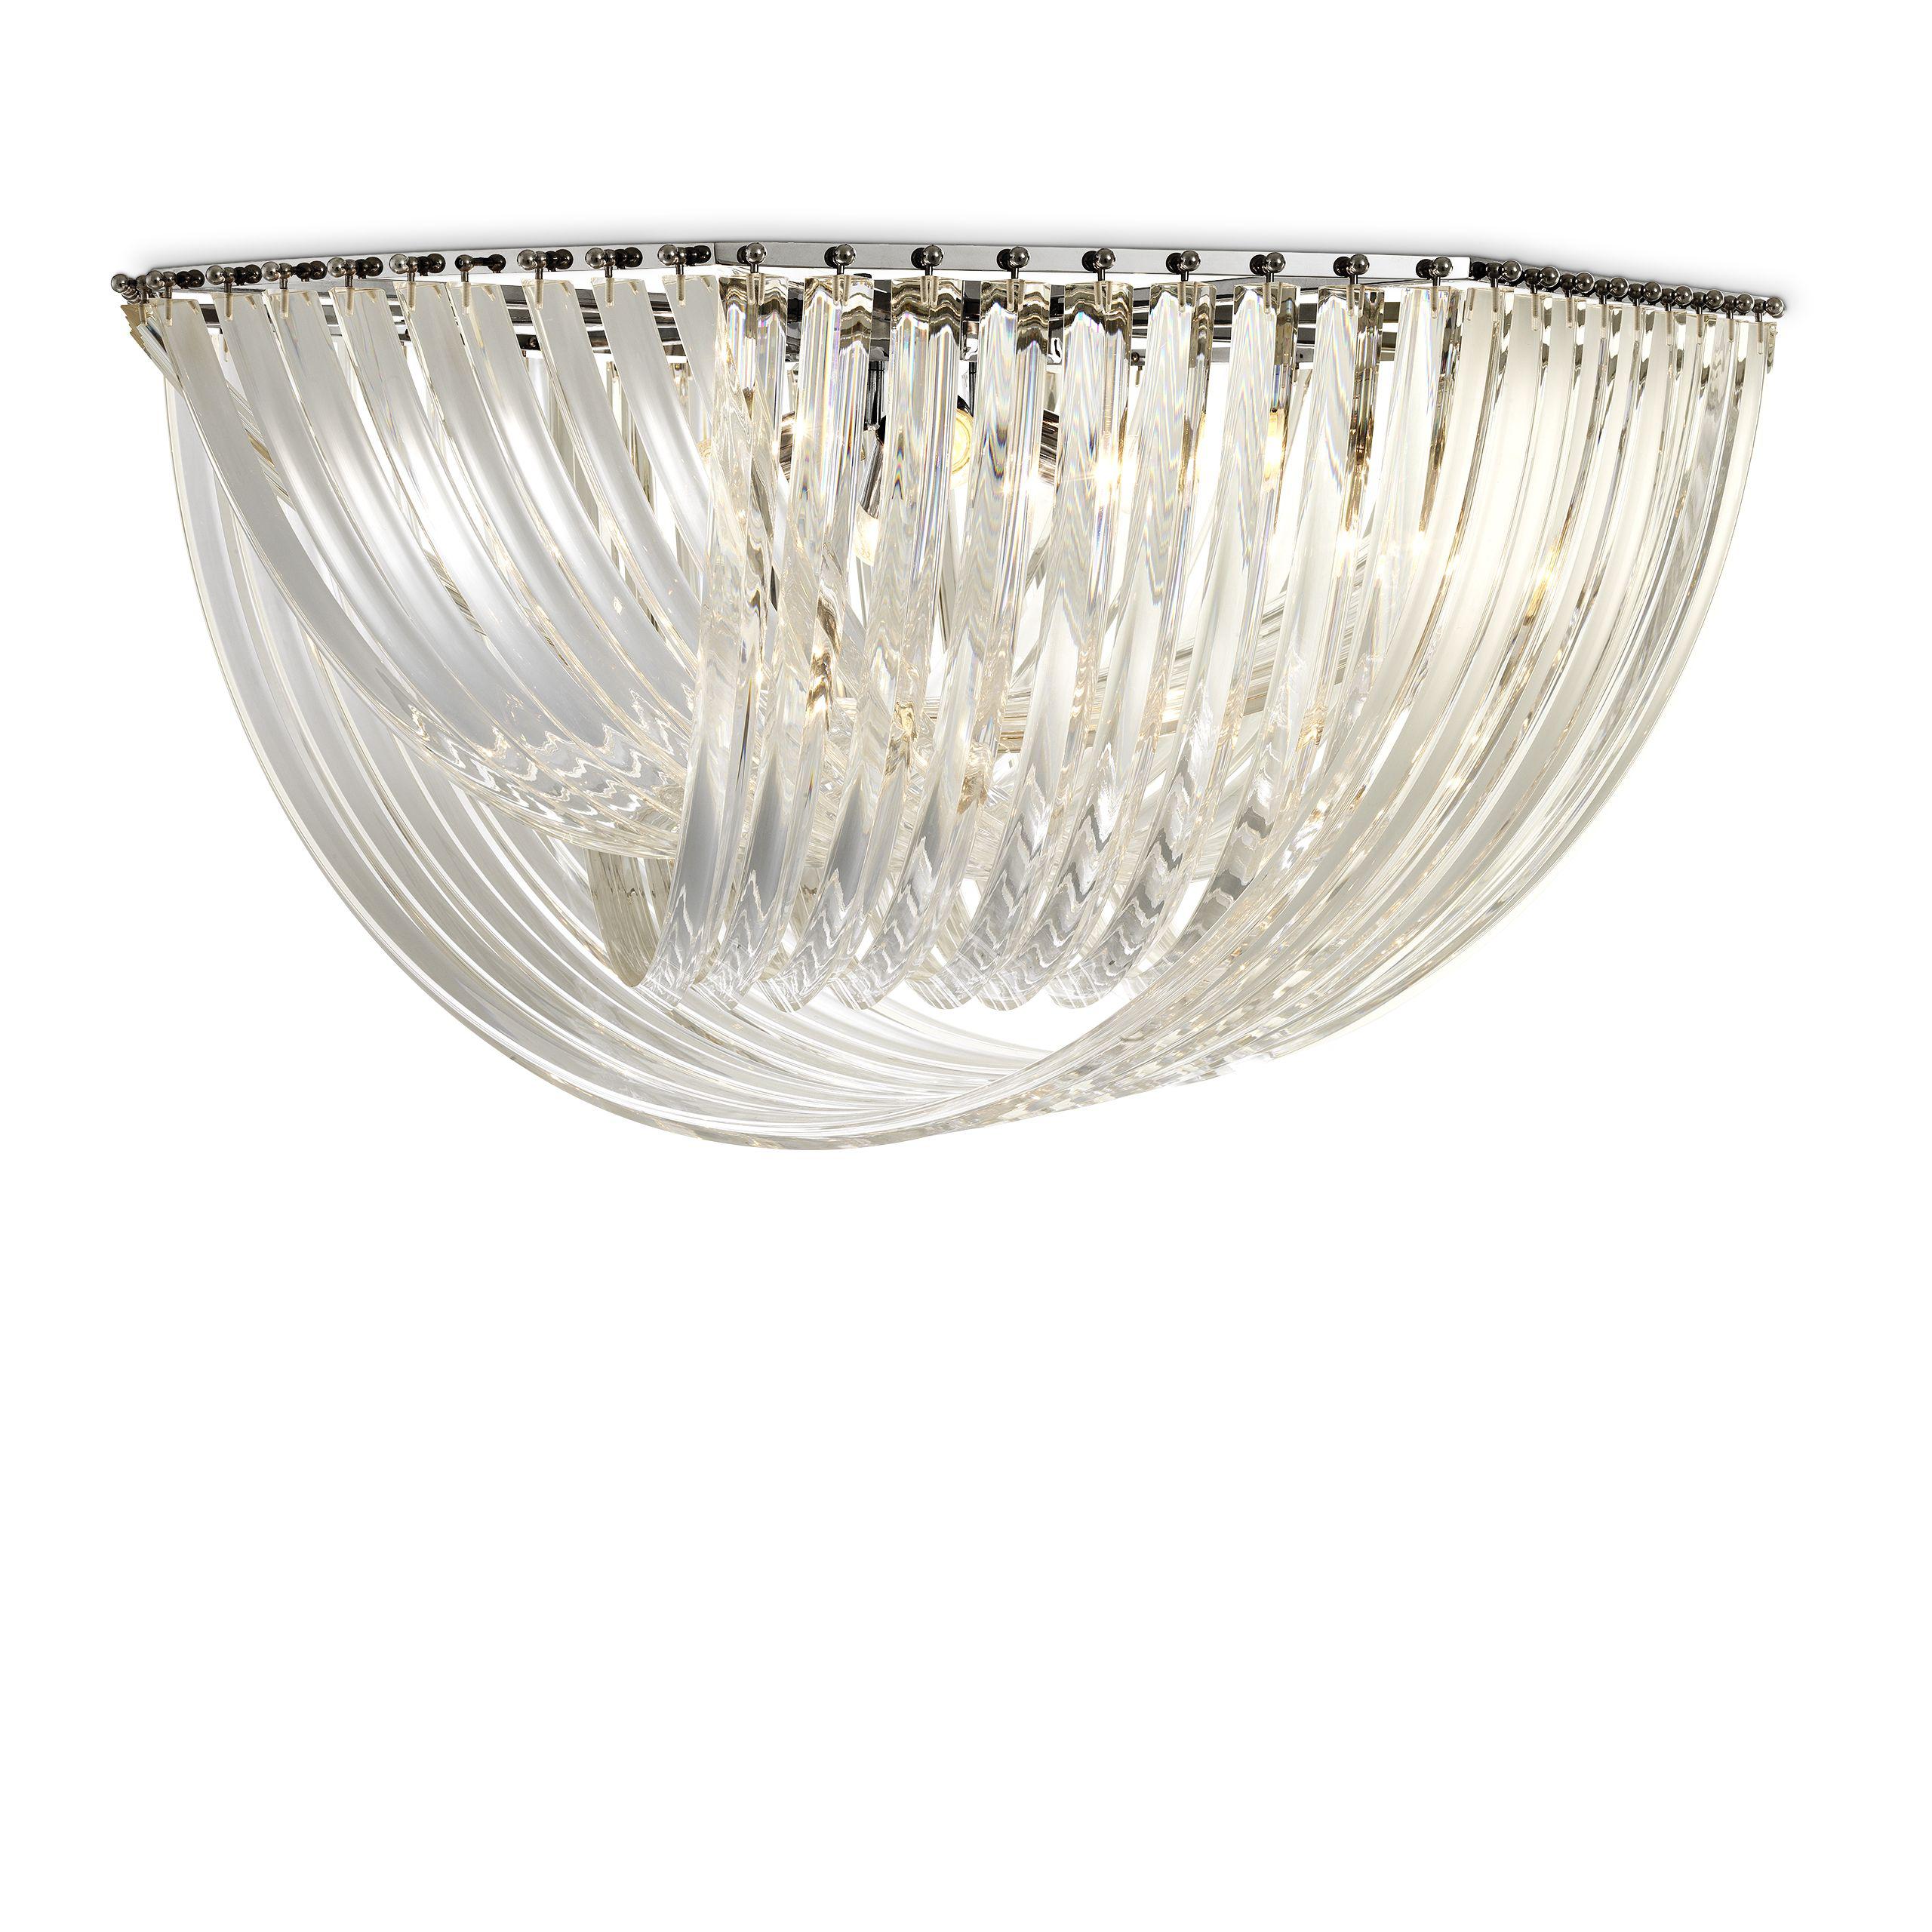 Купить Накладной светильник Ceiling Lamp Hyères в интернет-магазине roooms.ru